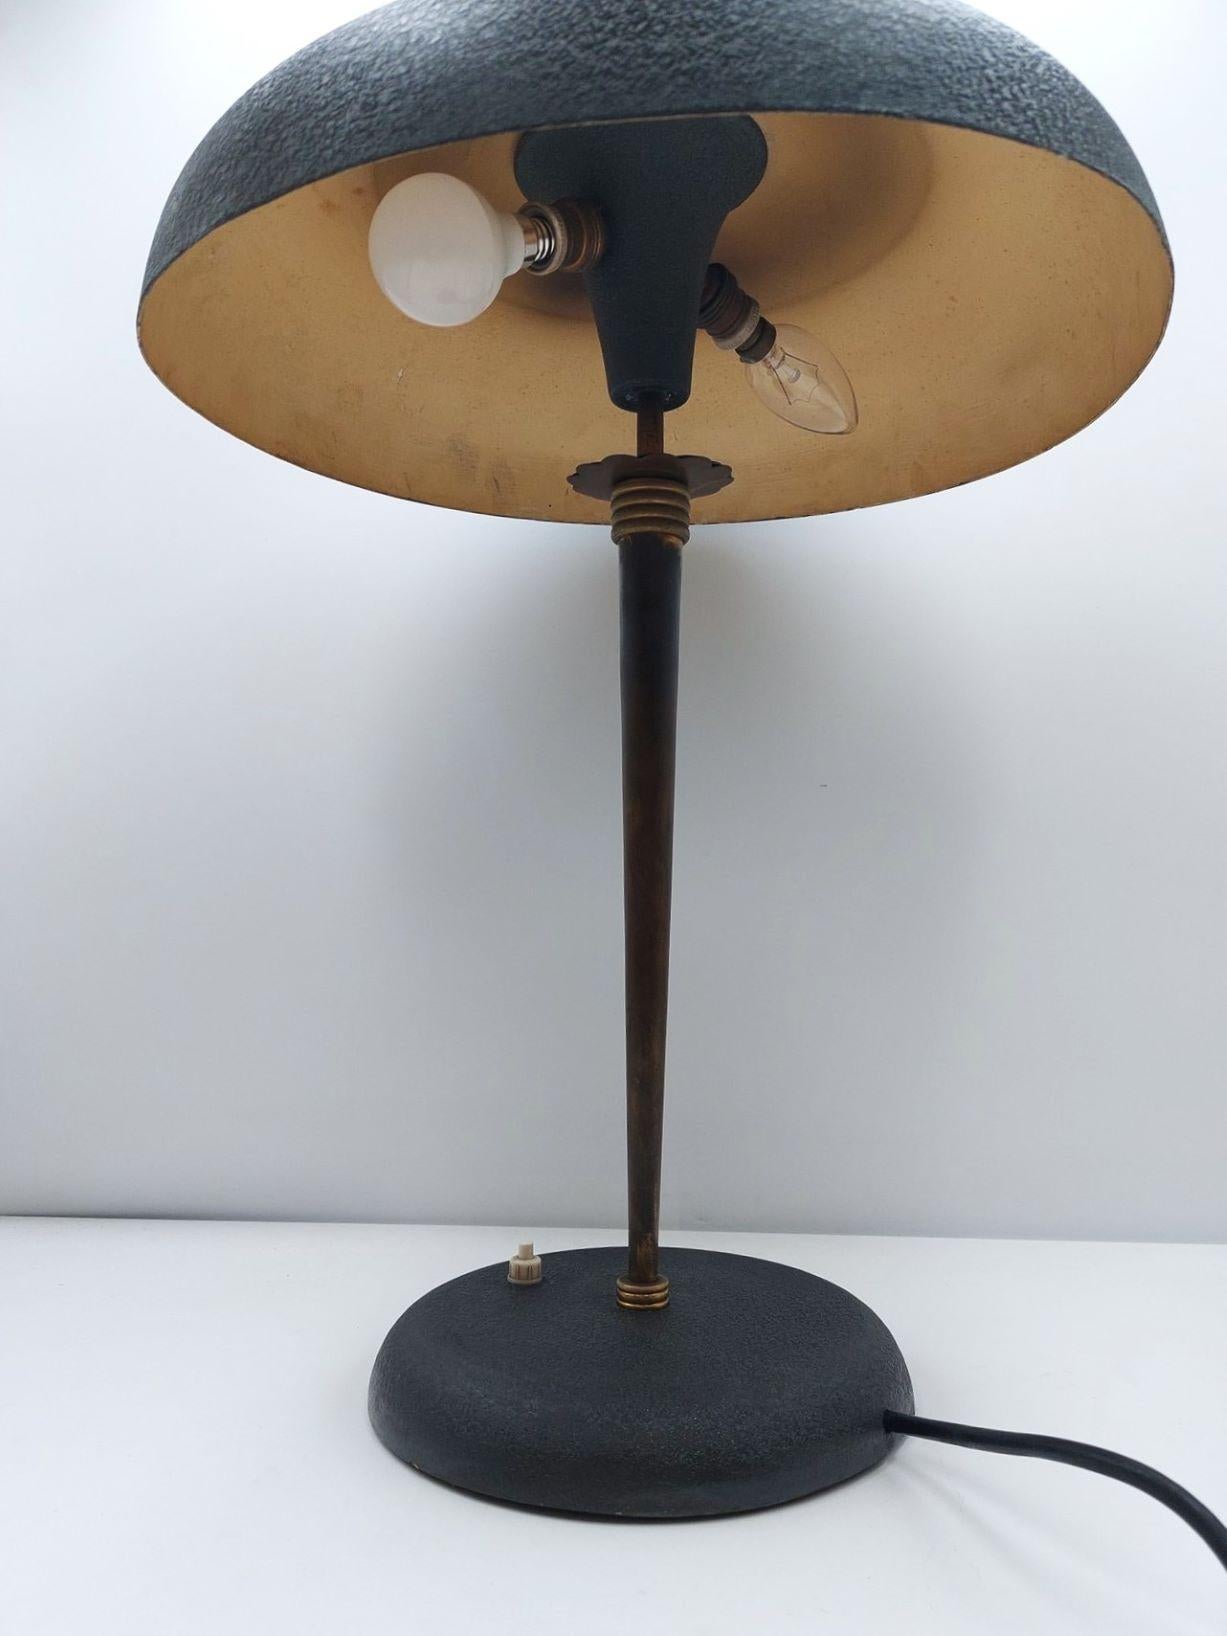 Midcentury Stilnovo Desk or Table Lamp Brass Black Enameled Metal, Iataly, 1950s For Sale 2